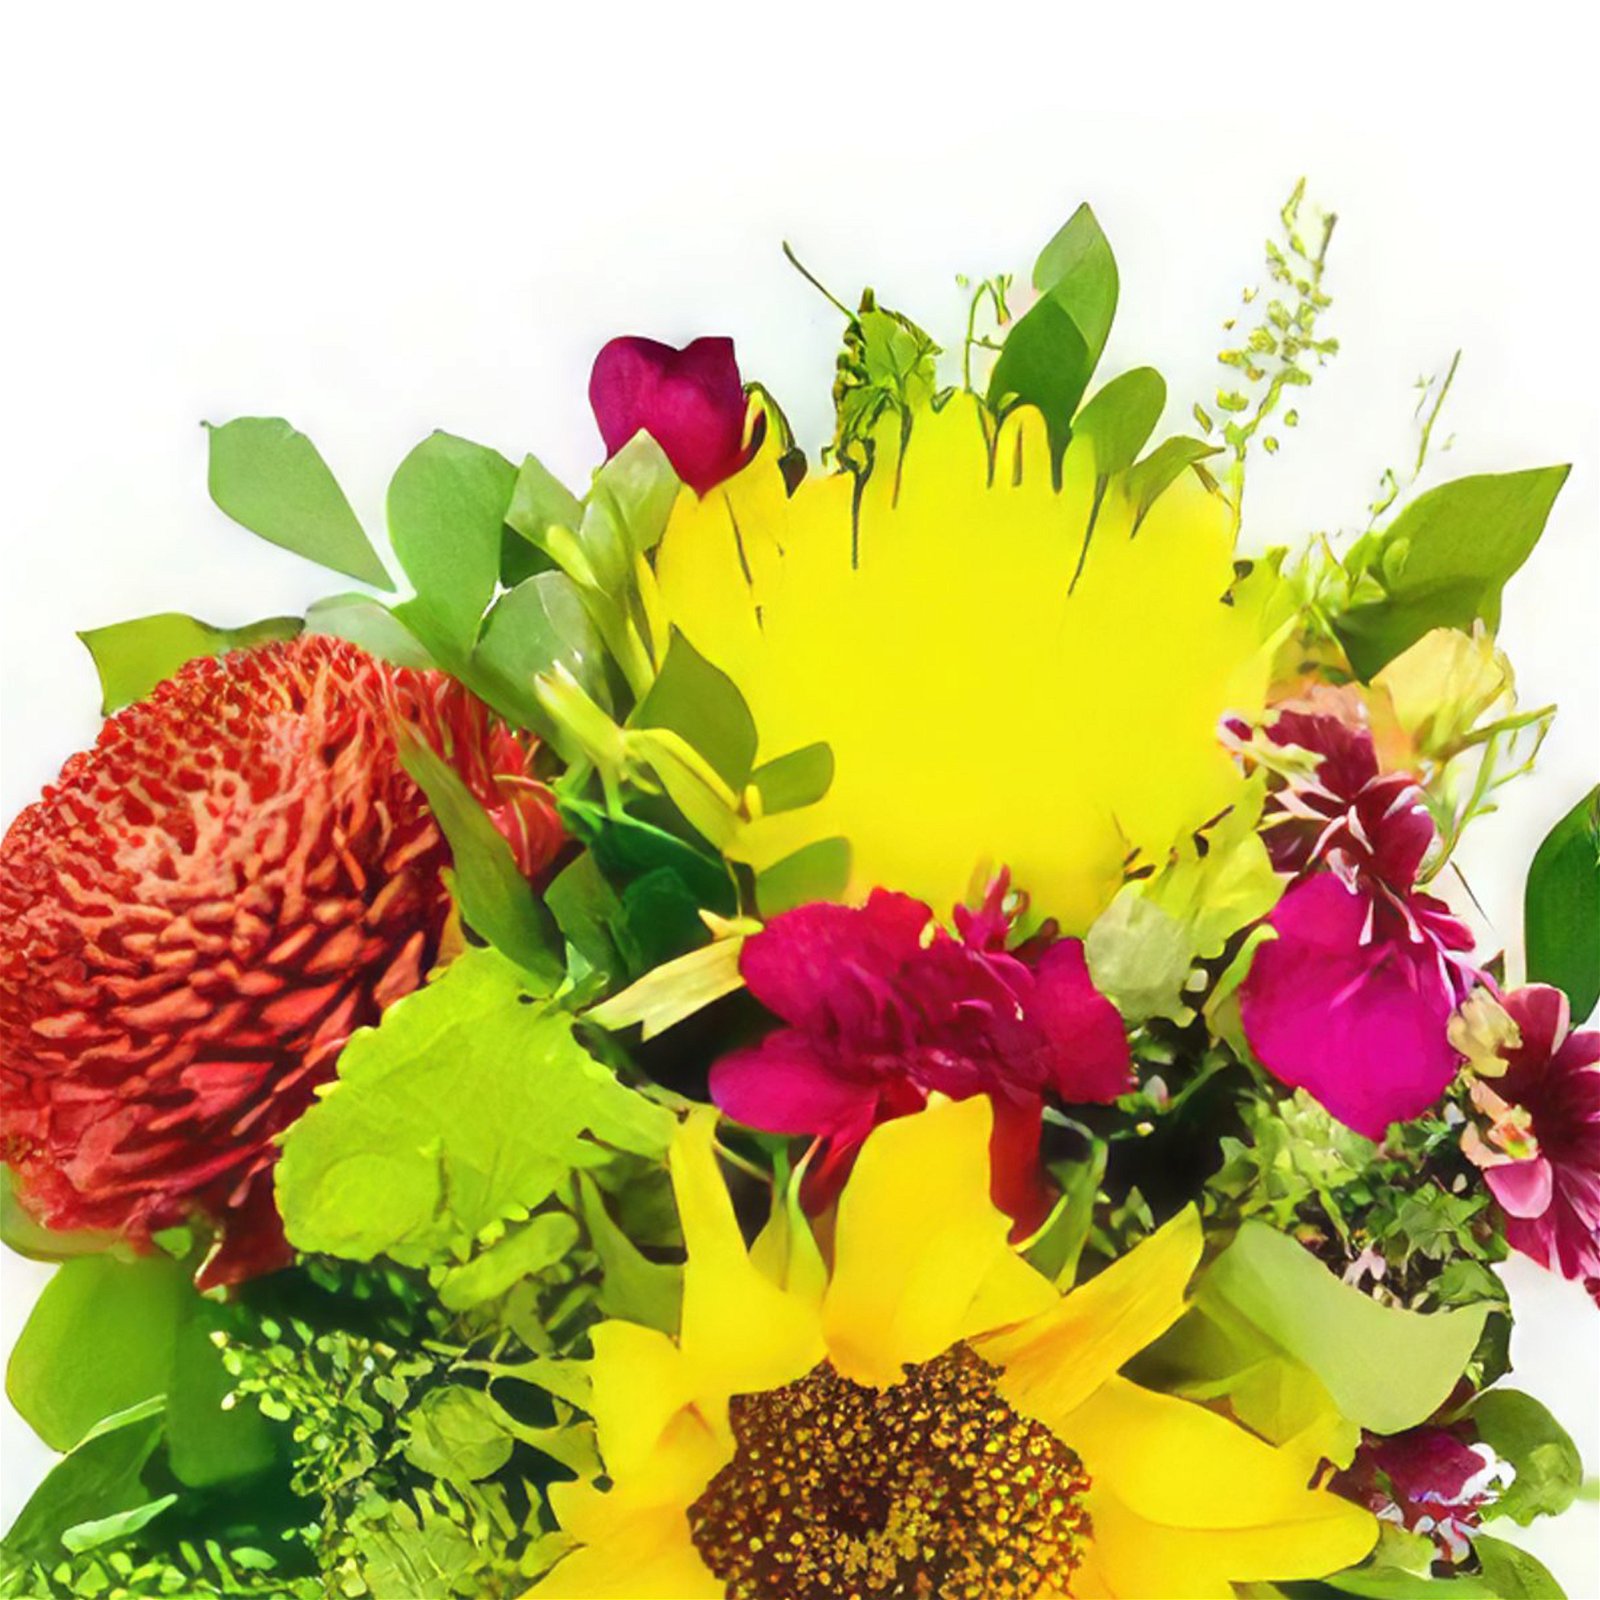 Alta Gracia Blumen Florist- Frühlingsliebe Bouquet/Blumenschmuck